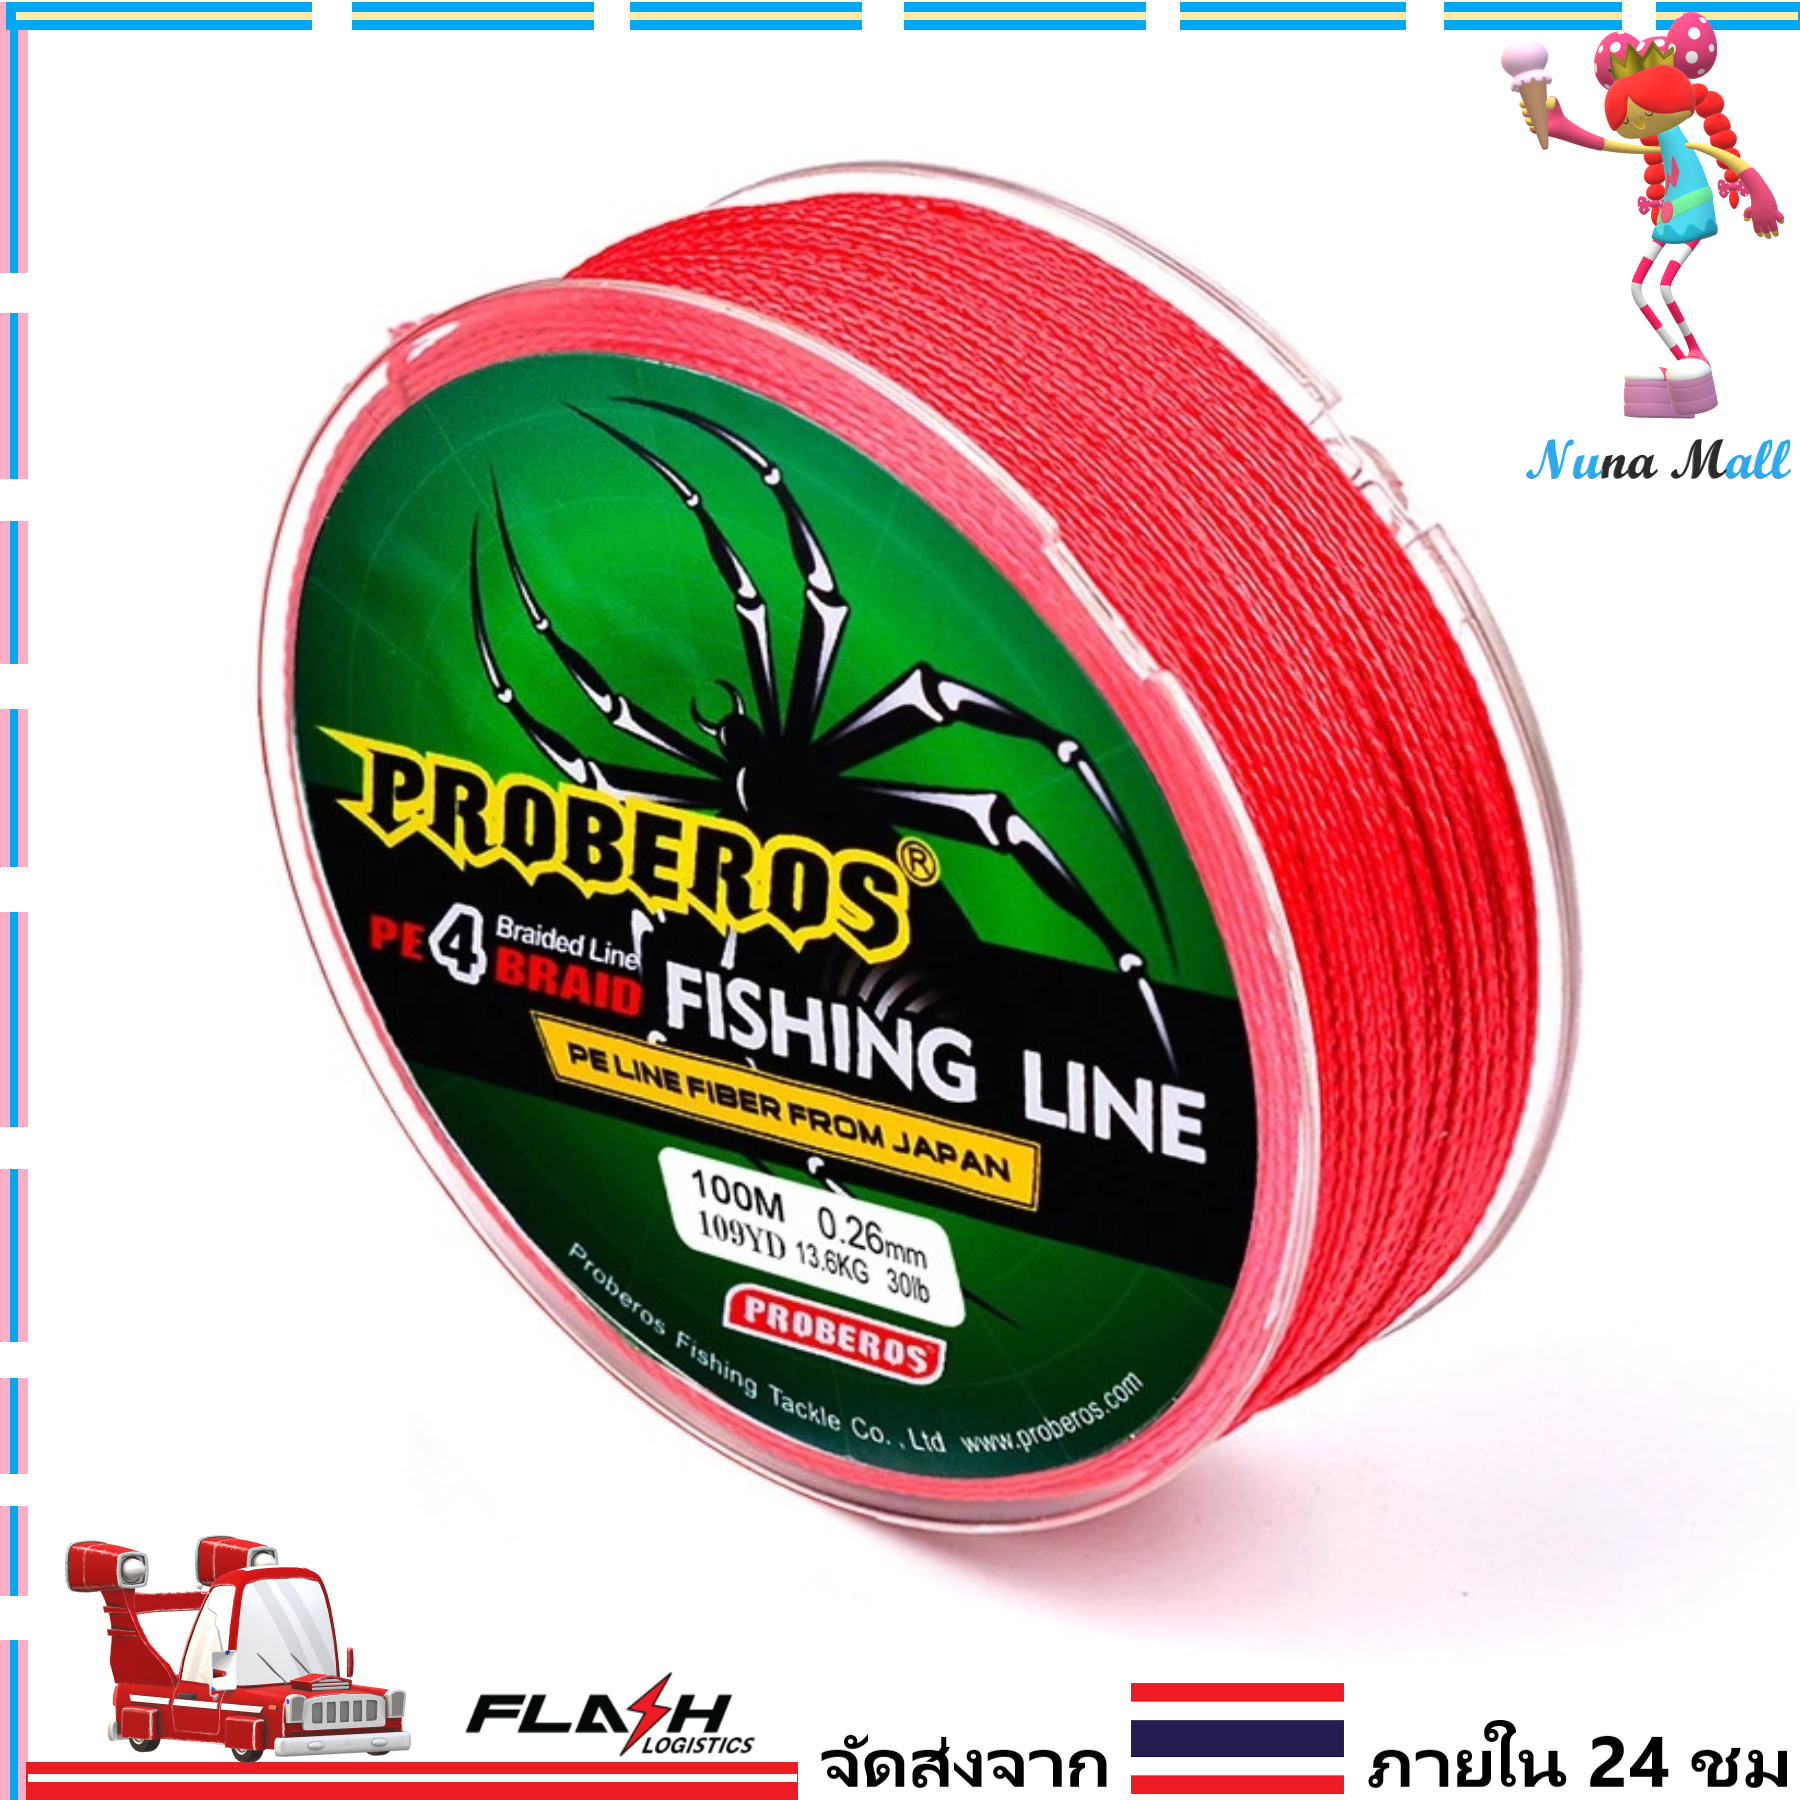 1-2 วัน (ส่งไว ราคาส่ง) สาย PE ถัก 4 สีเทา เหนียว ทน ยาว 100 เมตร - ศูนย์การค้านูนามอลล์ [ Nuna Mall ] Fishing line wire Proberos Pro Beros - Red